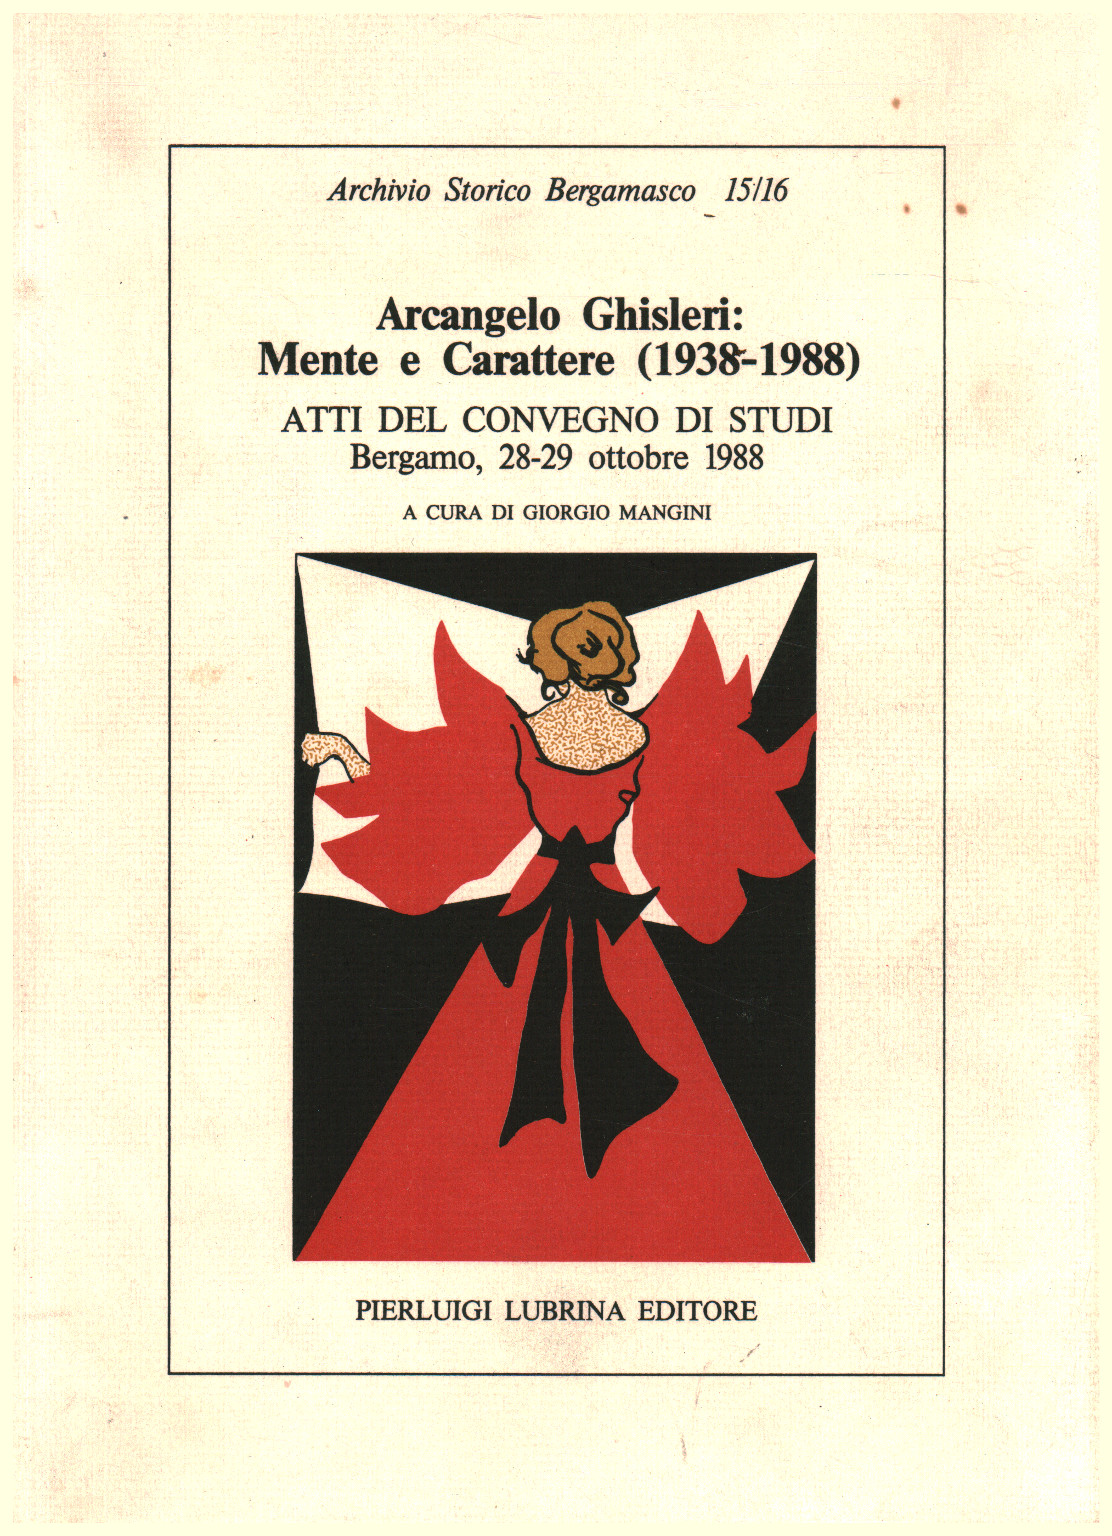 Arcangelo Ghisleri: Mente e Carattere (1938-1988), s.a.